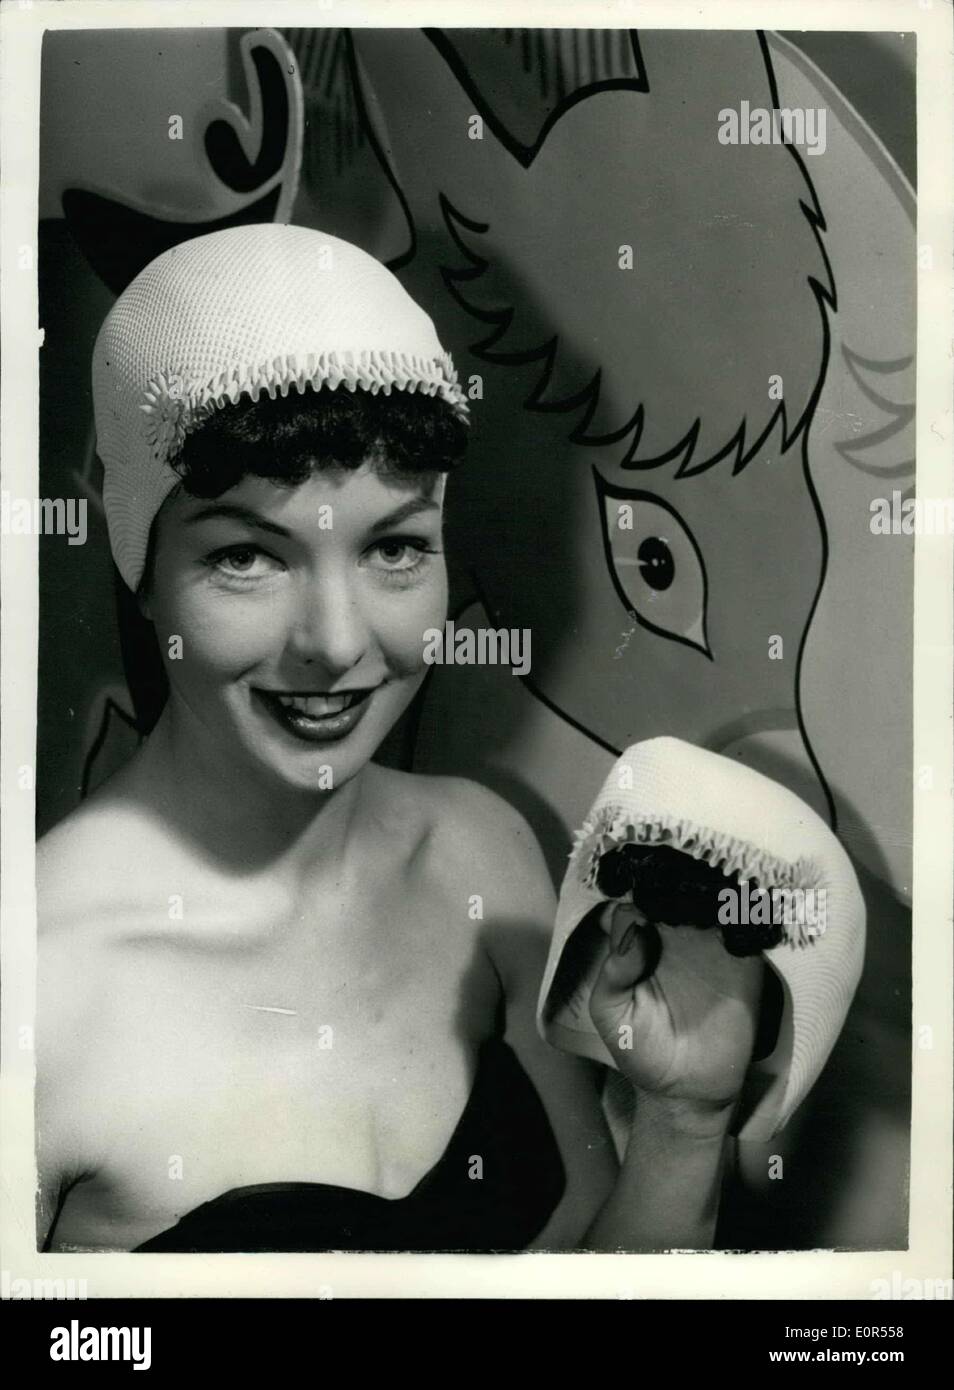 Febbraio 12, 1958 - cappucci di balneazione In mostra a Londra: Mostra fotografica di Fay Brooke visualizza "bang" - un cappuccio bianco rifilato in rosa con false Foto Stock